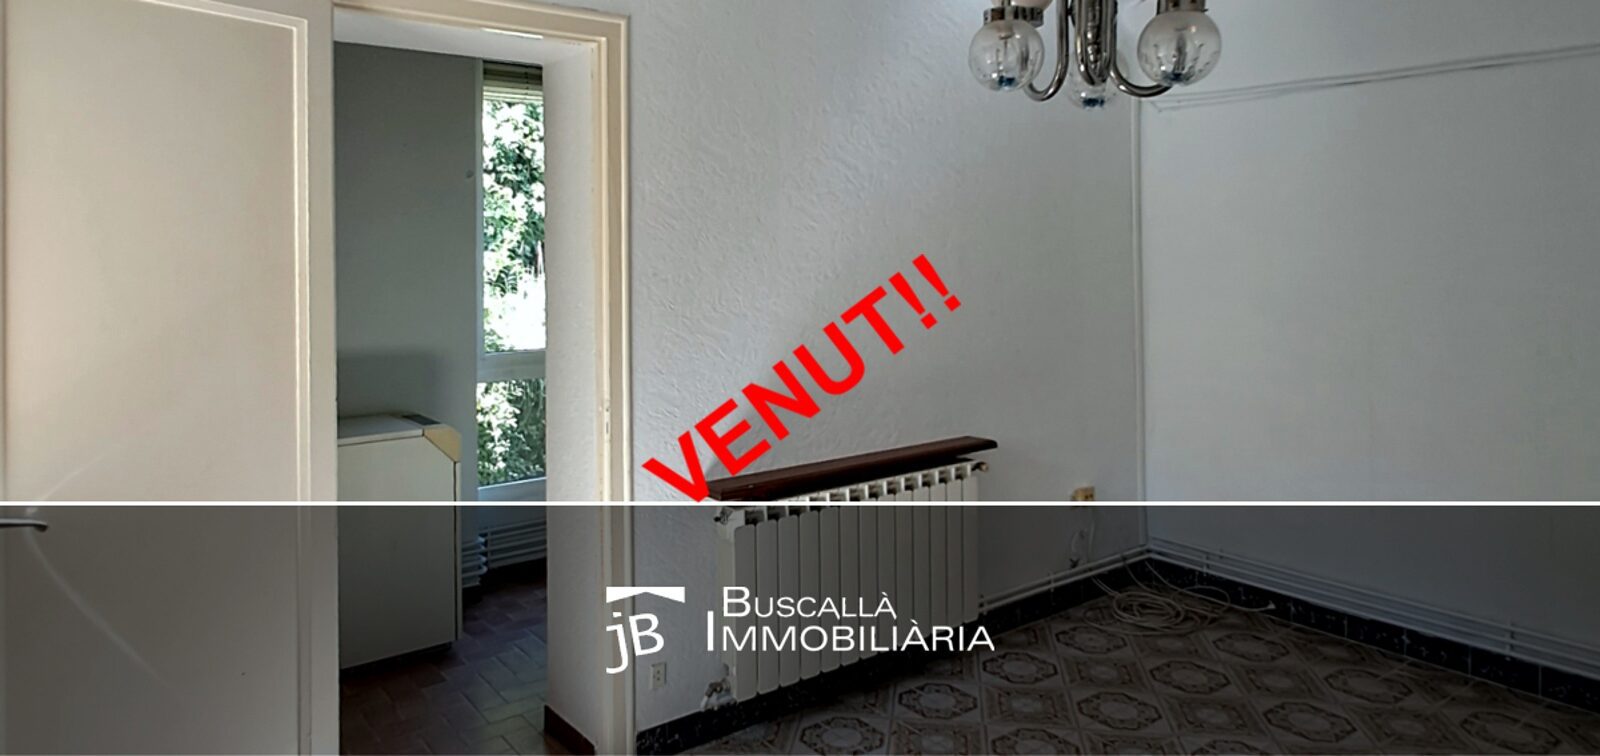 venda pis amb galeria i garatge-sala porta galeria-Buscalla Immobiliària al Berguedà-215vp